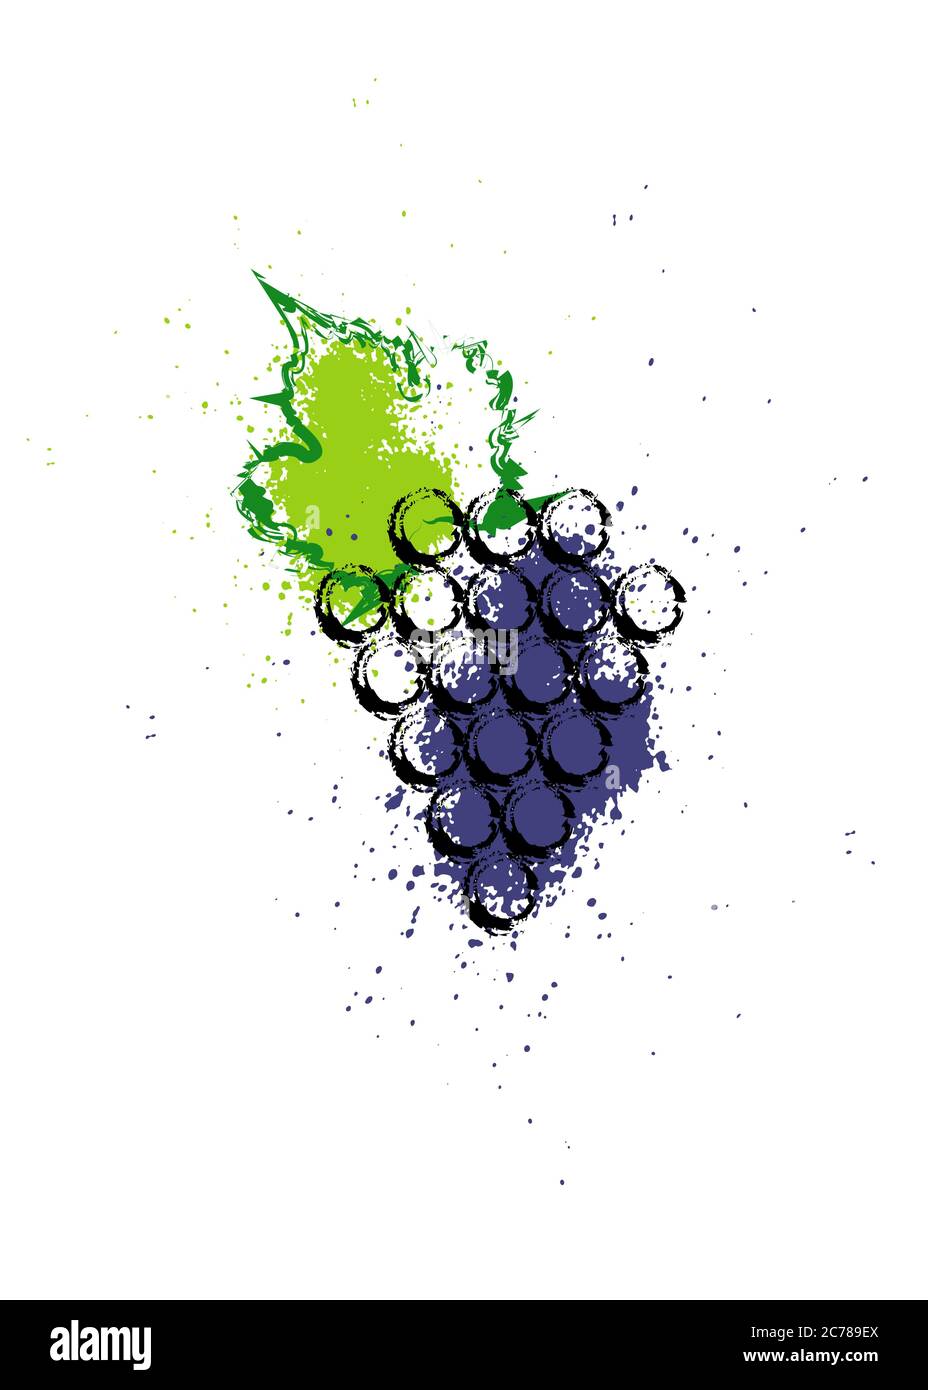 Illustration vectorielle colorée et icône de vigne de raisin. Aquarelle abstraite de style splash avec baies de raisin. Concept design pour l'étiquette des vins, la carte des vins, le menu Illustration de Vecteur